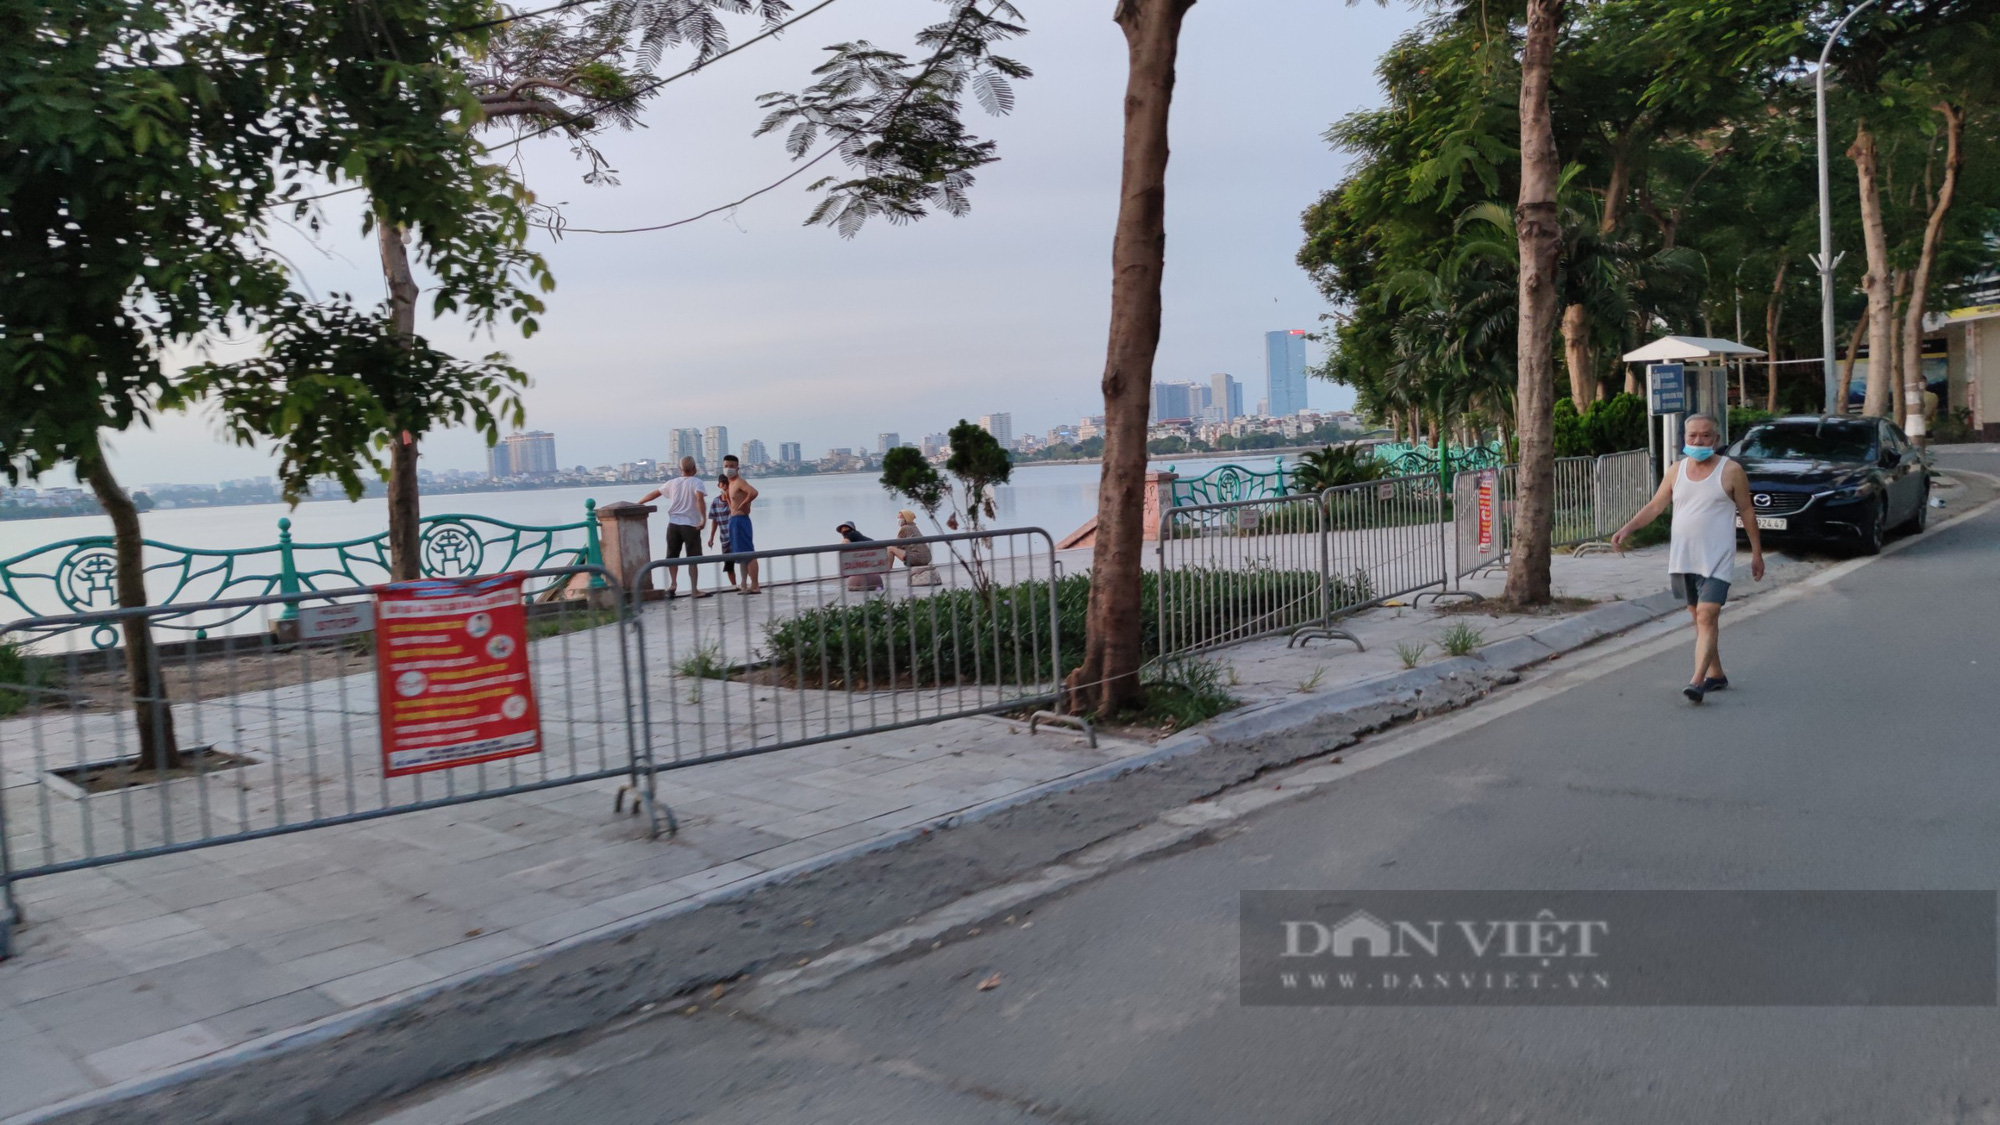 Bất chấp lệnh giãn cách, một số người Hà Nội vẫn đi tập thể dục, chạy bộ, đạp xe - Ảnh 1.